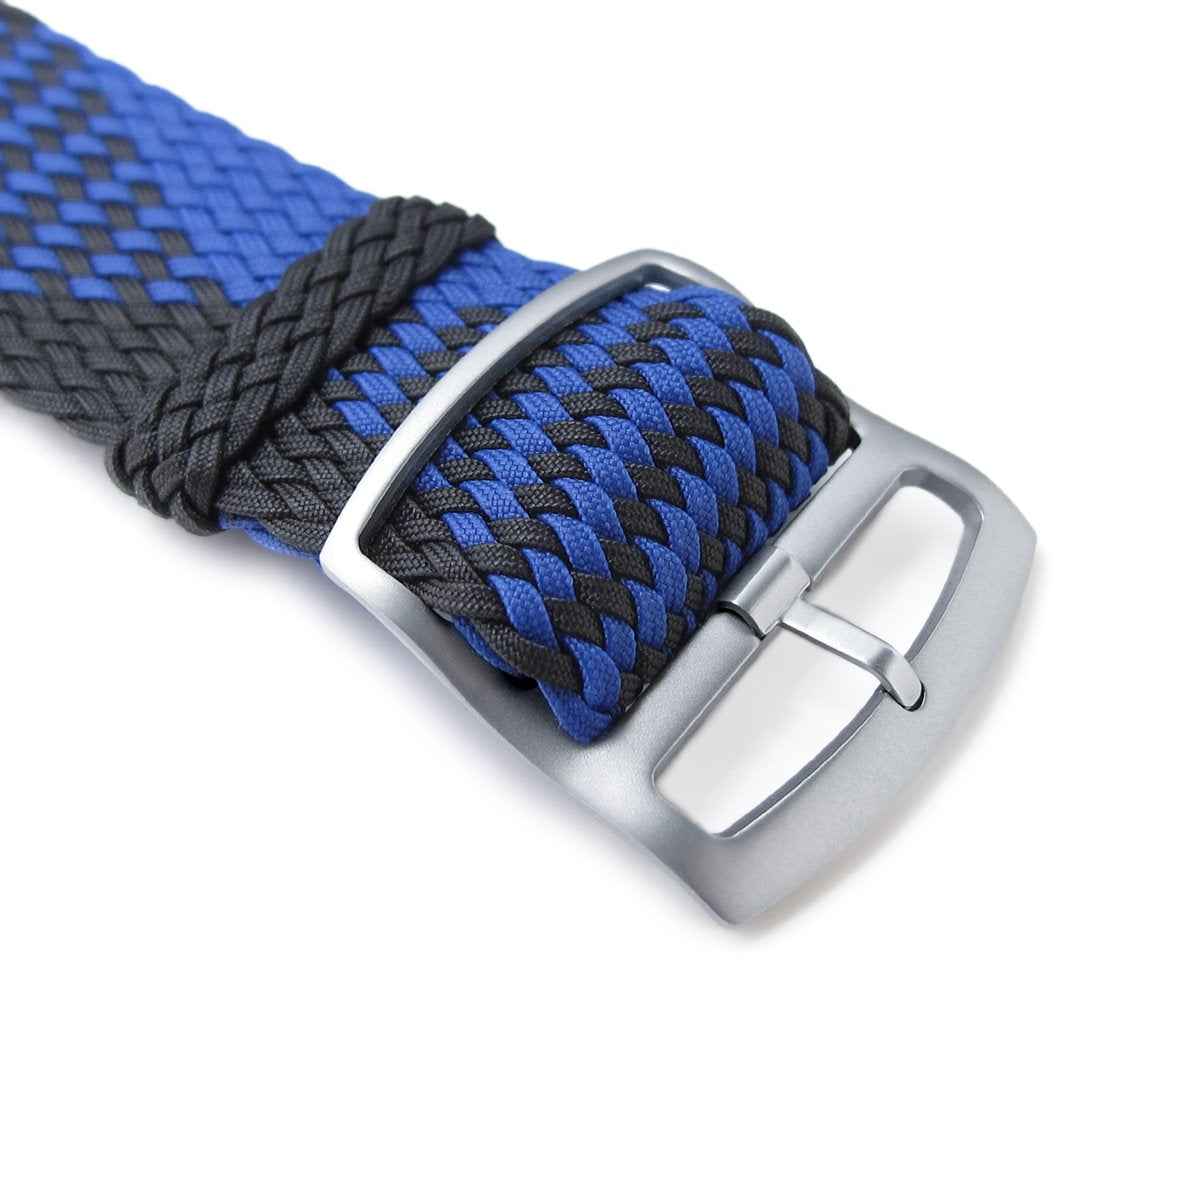 20 22mm MiLTAT Perlon Watch Strap Black & Blue Sandblasted Ladder Lock Slider Buckle Strapcode Watch Bands